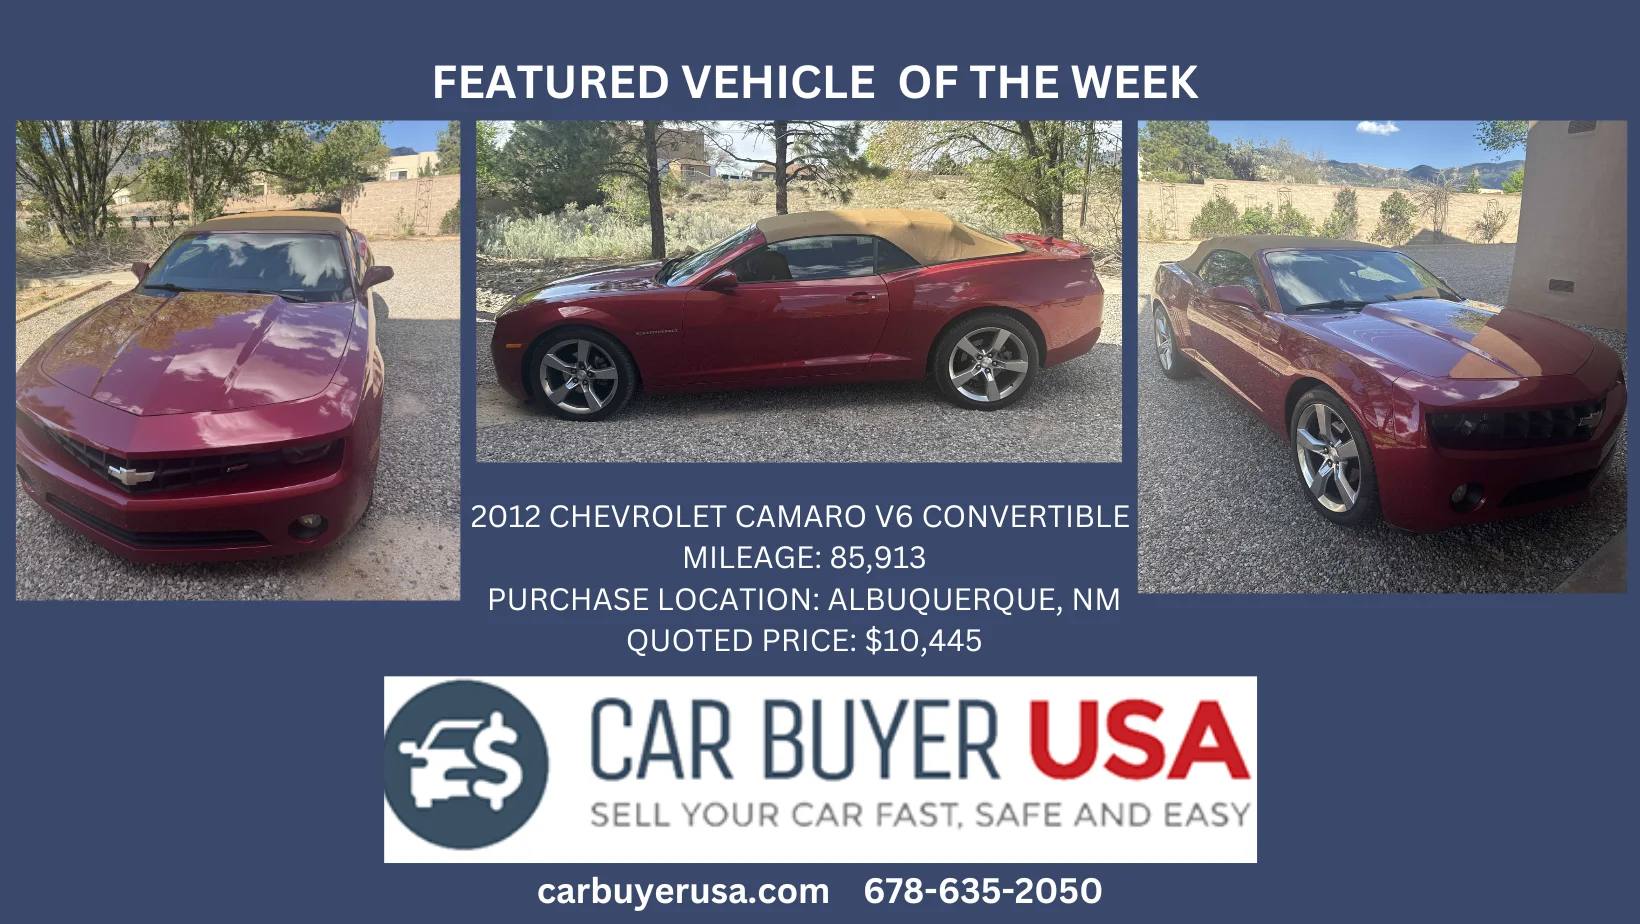 Car Buyer USA - 2012 Chevrolet Camaro V6 Convertible - $10,445